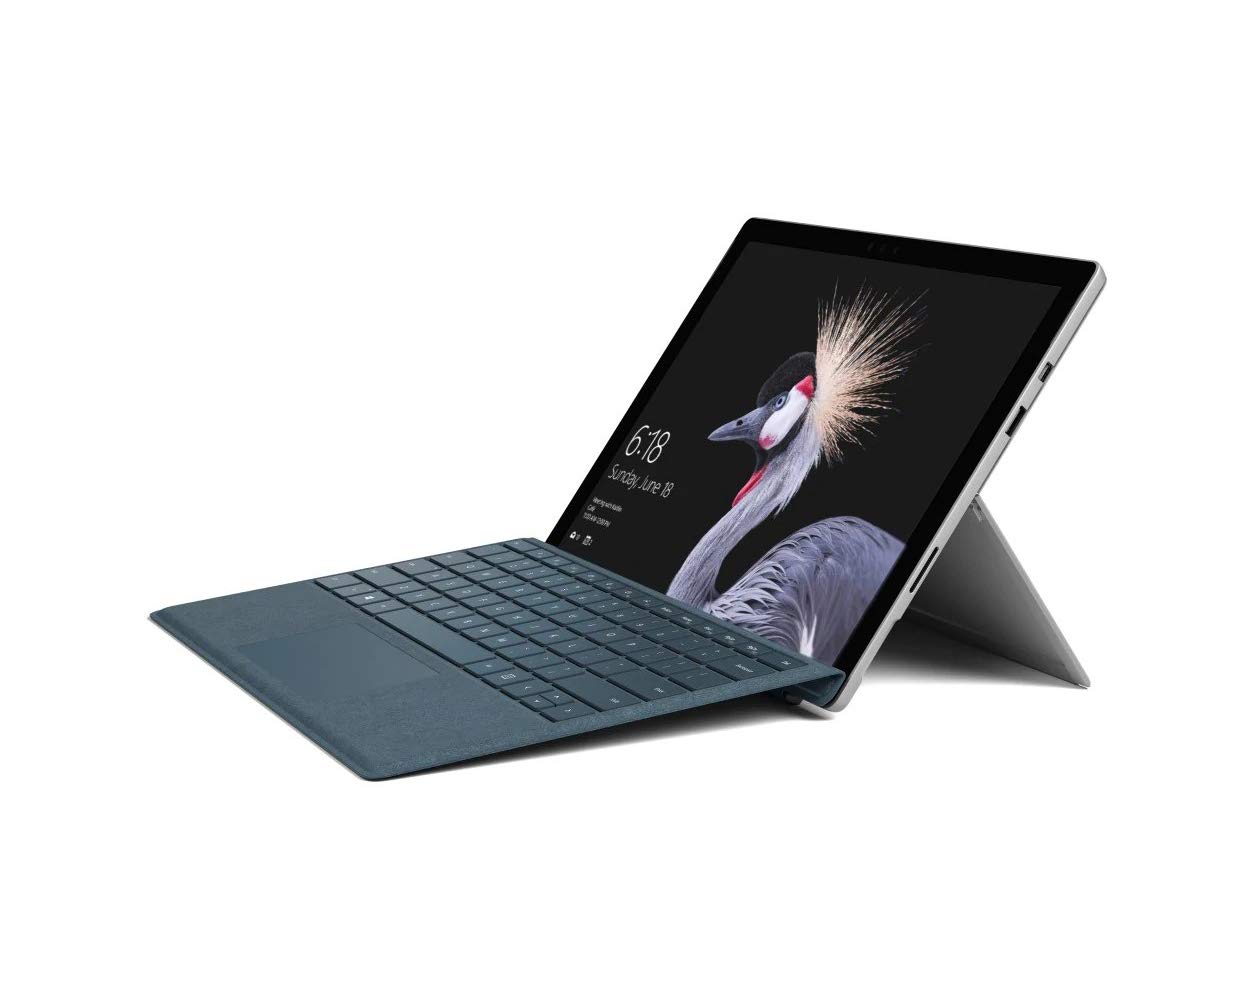 Microsoft Surface Pro, Model 1796, 2-in-1 Tablet Laptop (FJU-00001) Intel Core i5, 4GB RAM, 128GB SSD, 12.3-in PixelSense Multi-Touch, Win10 Pro